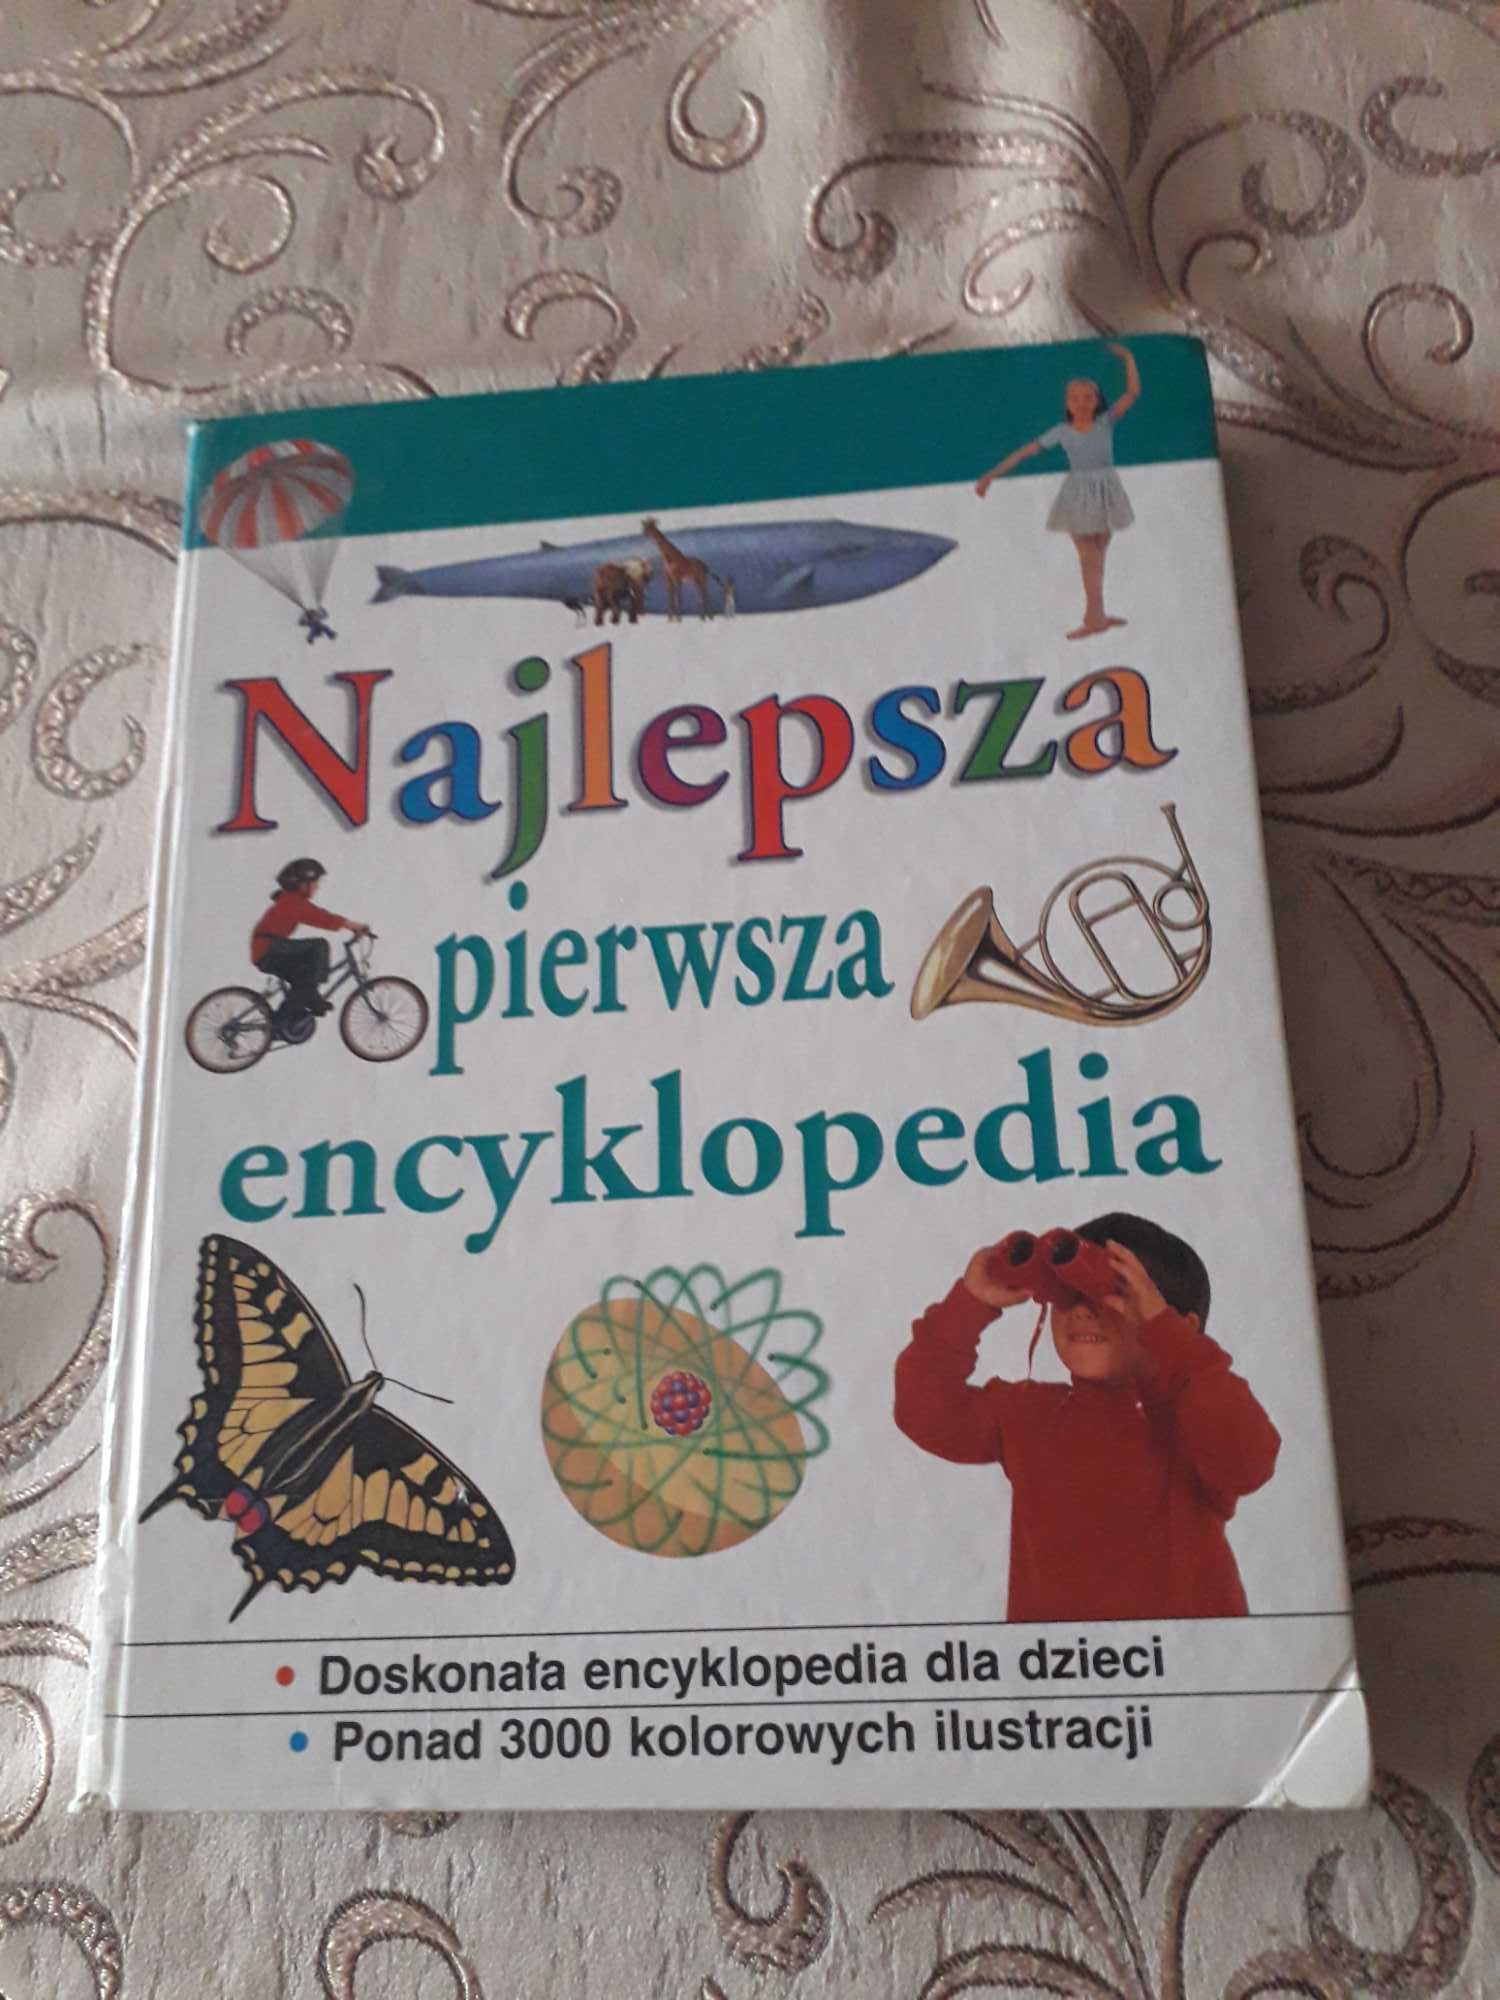 Najlepsza pierwsza encyklopedia doskonała encyklopedia dla dzieci